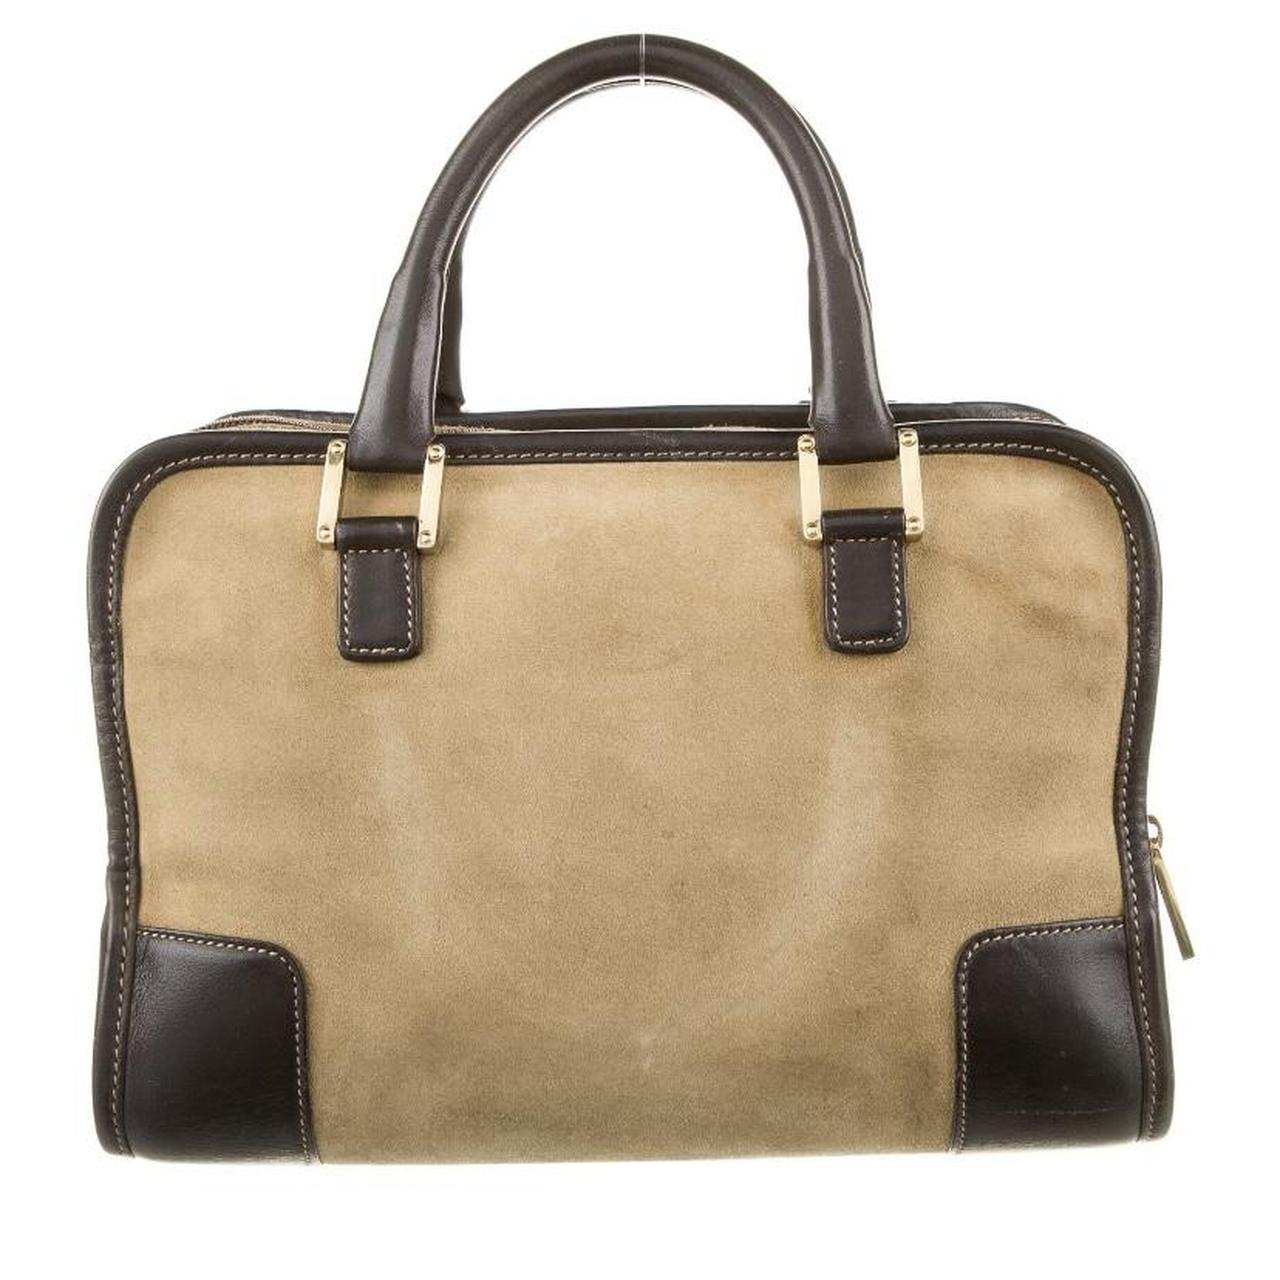 Loewe Women's Tan and Brown Bag (3)